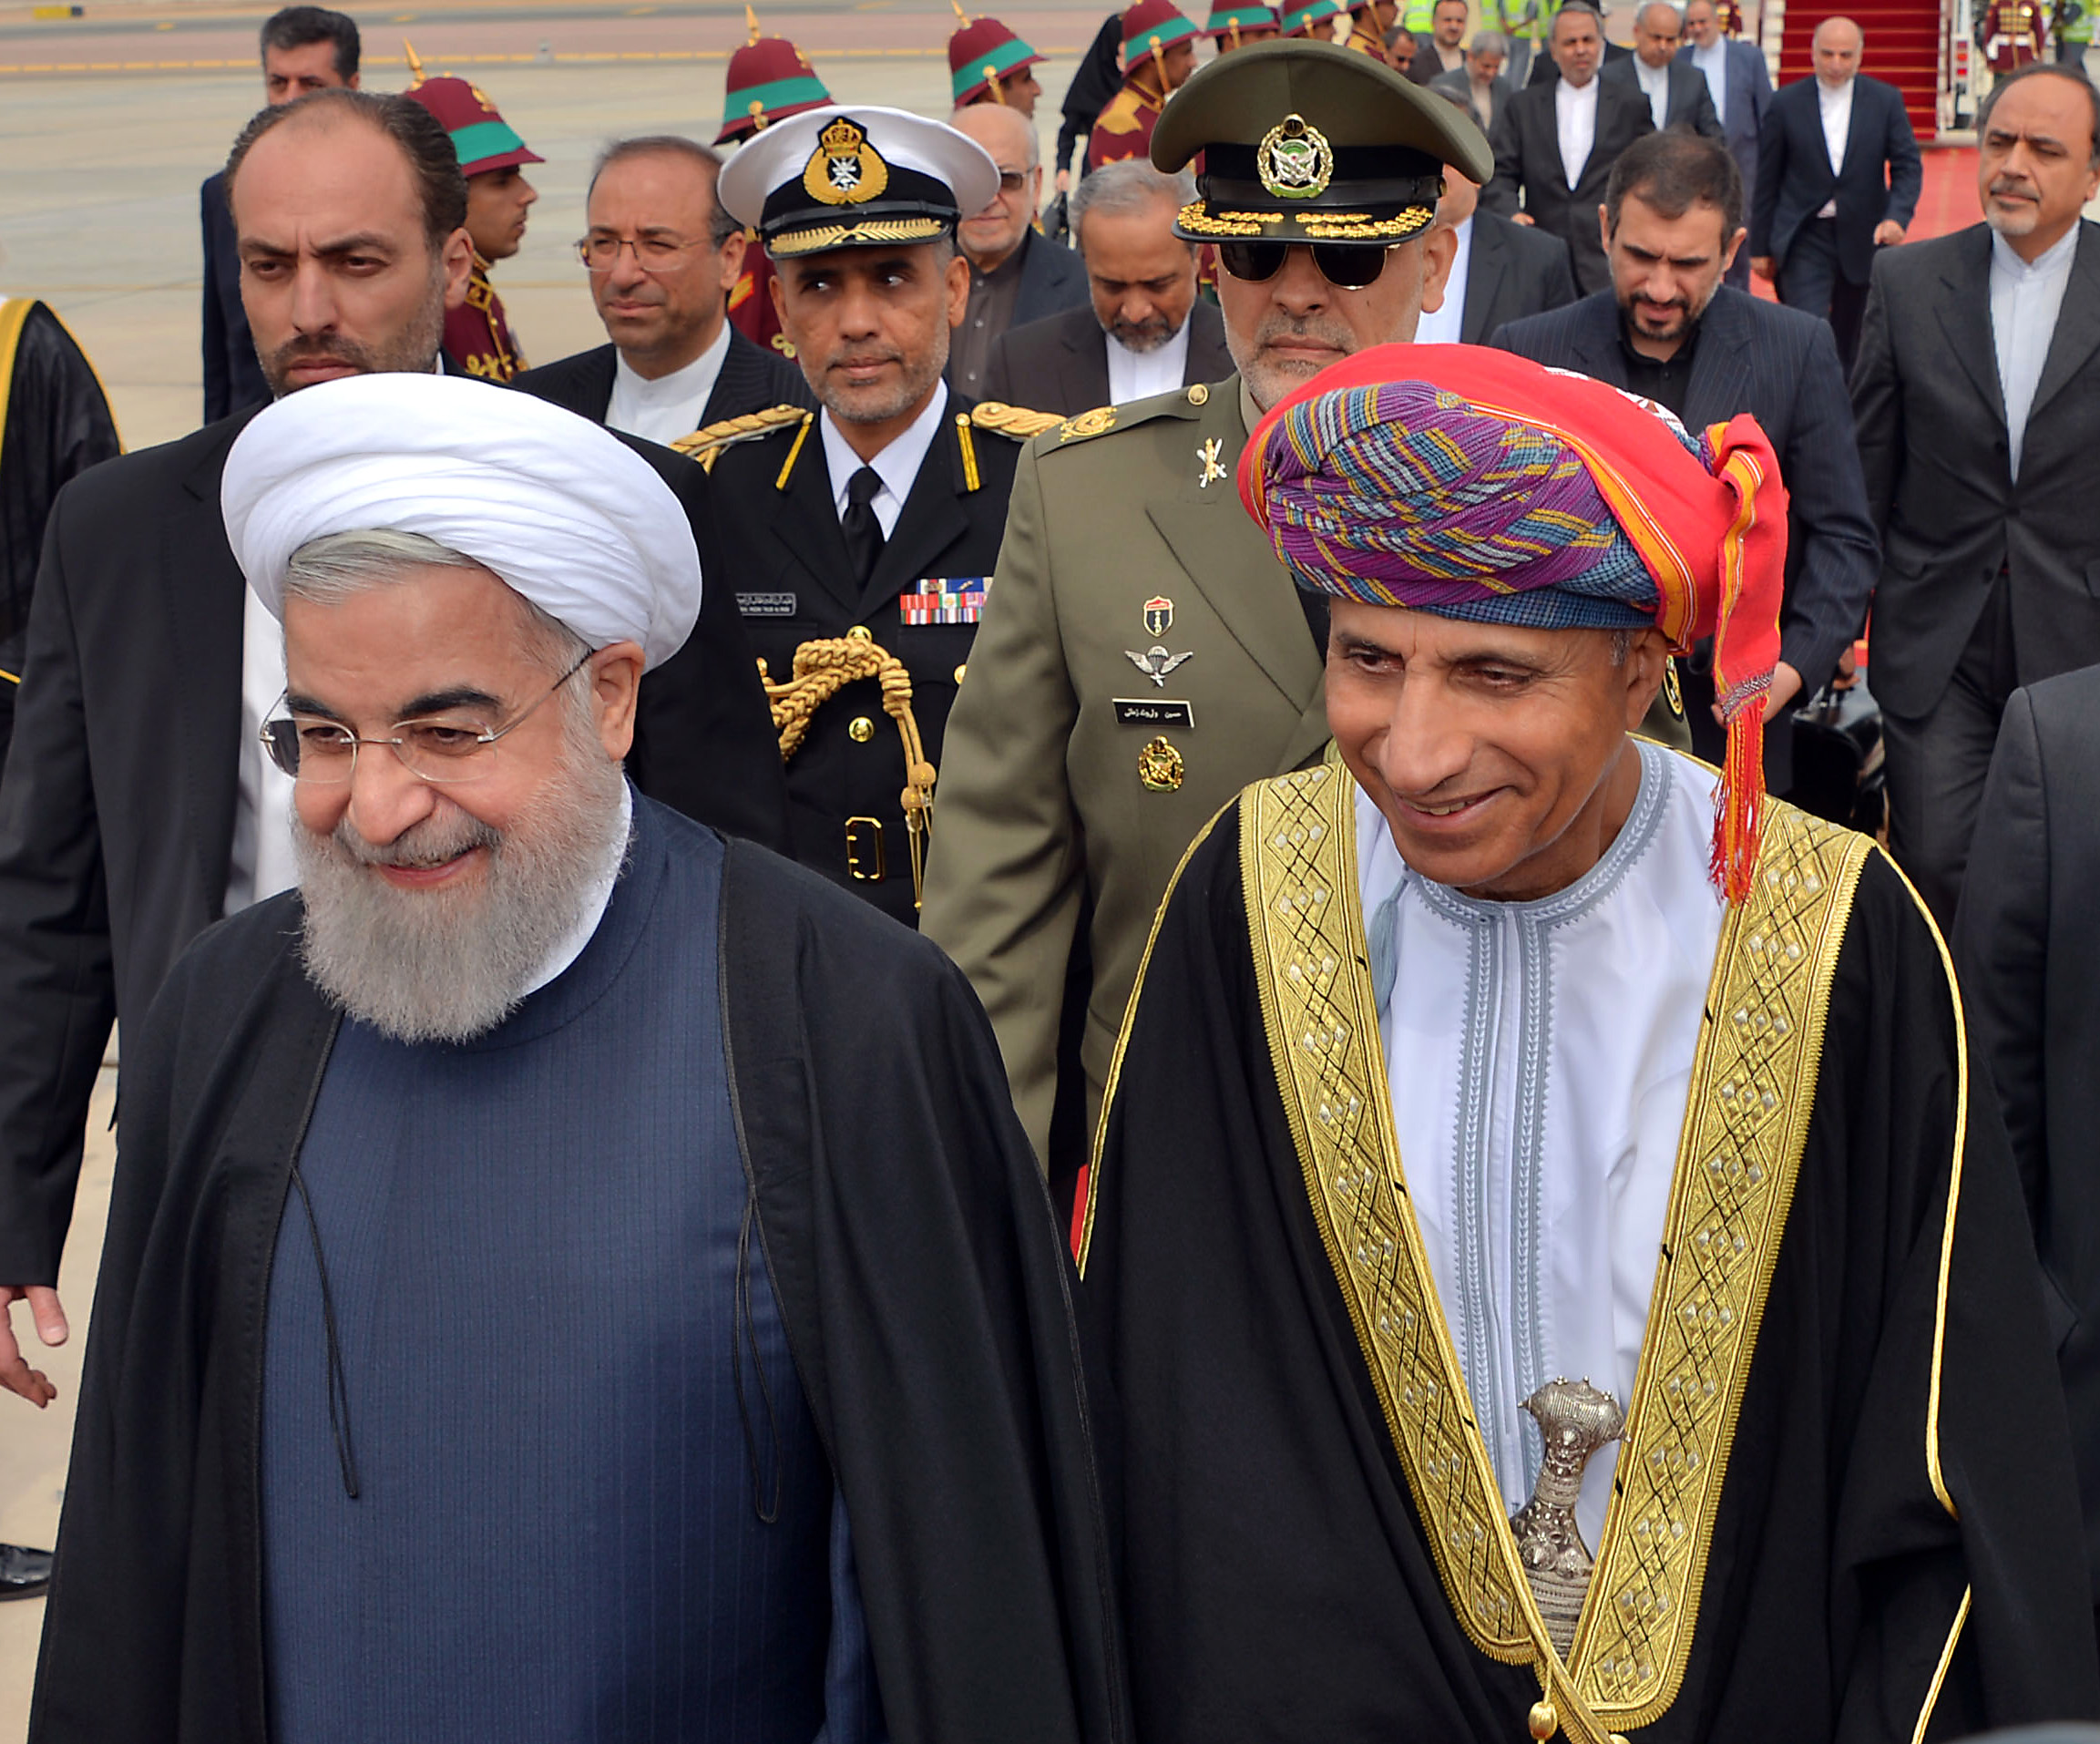  نائب رئيس الوزراء العمانى فهد بن محمود آل سعيد يرحب بالرئيس الإيرانى 